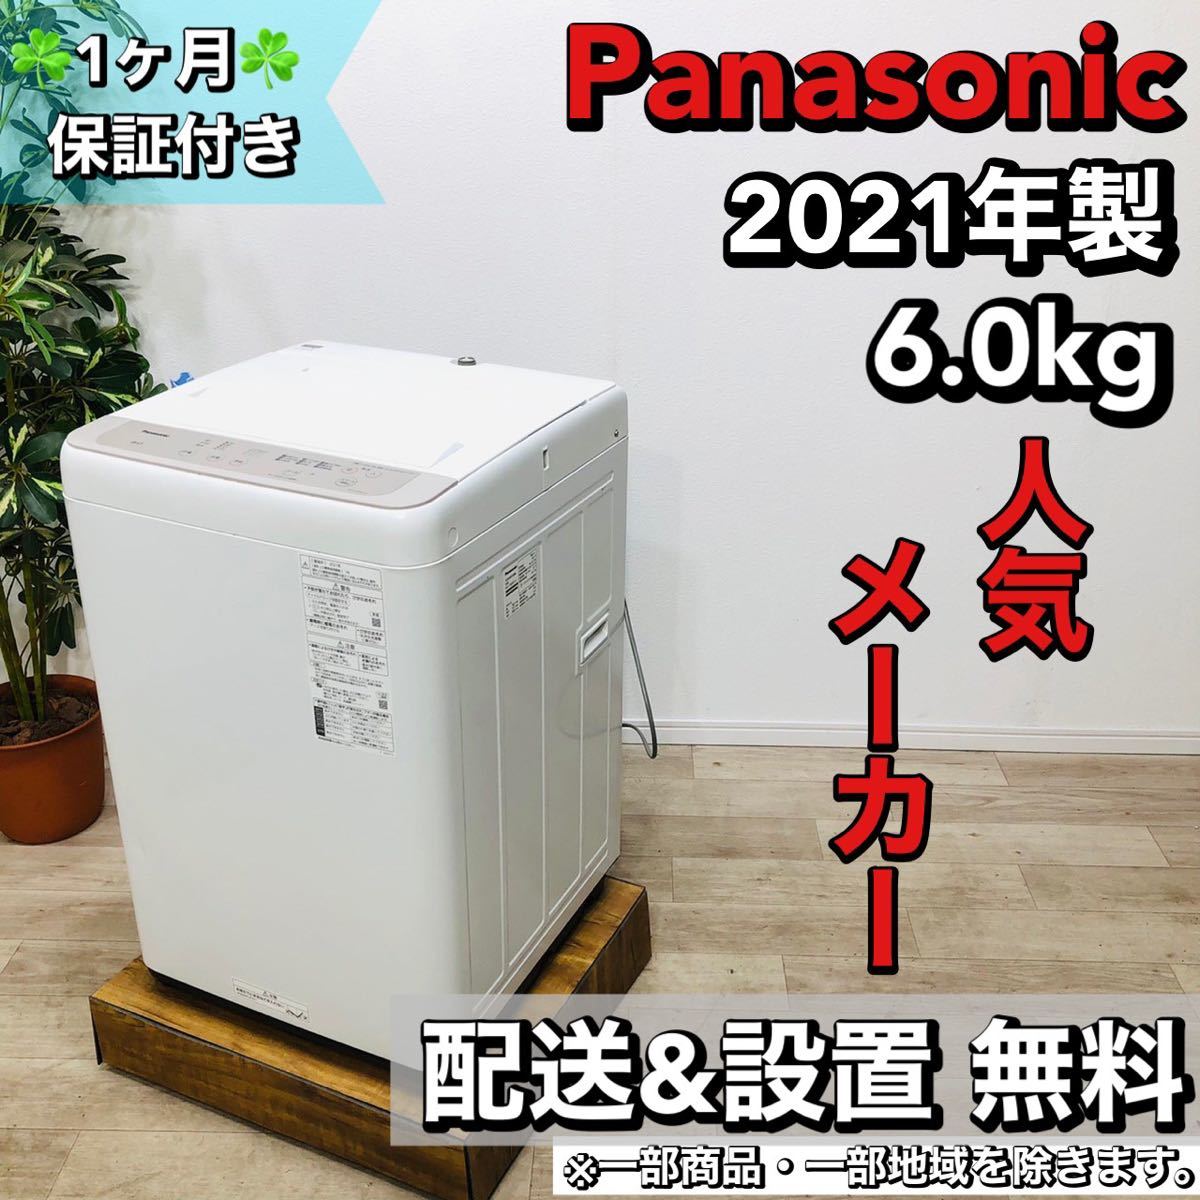 新品?正規品 Panasonic a1512 洗濯機 6.0kg 2021年製 11 5kg以上